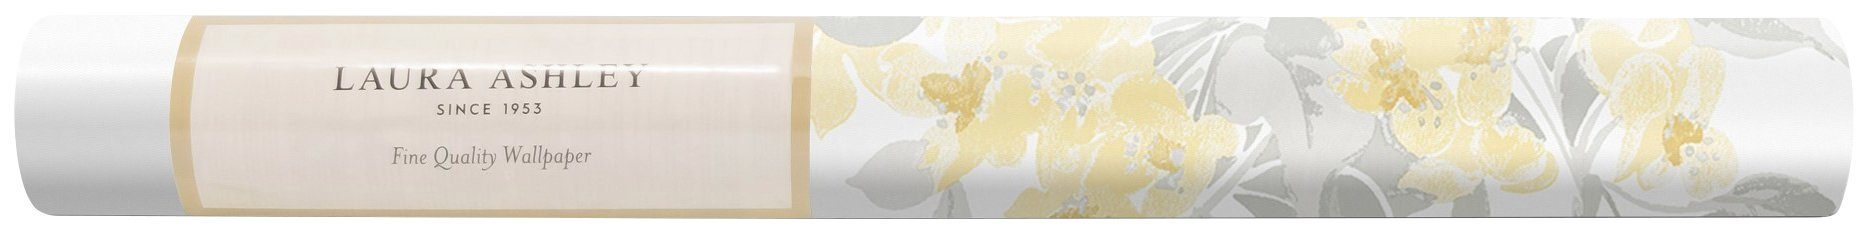 LAURA ASHLEY Vliestapete Apple FSC® zertifiziert, weiß/gelb gemustert, mit Druck, 10 Länge Meter lebhaftem Blossom